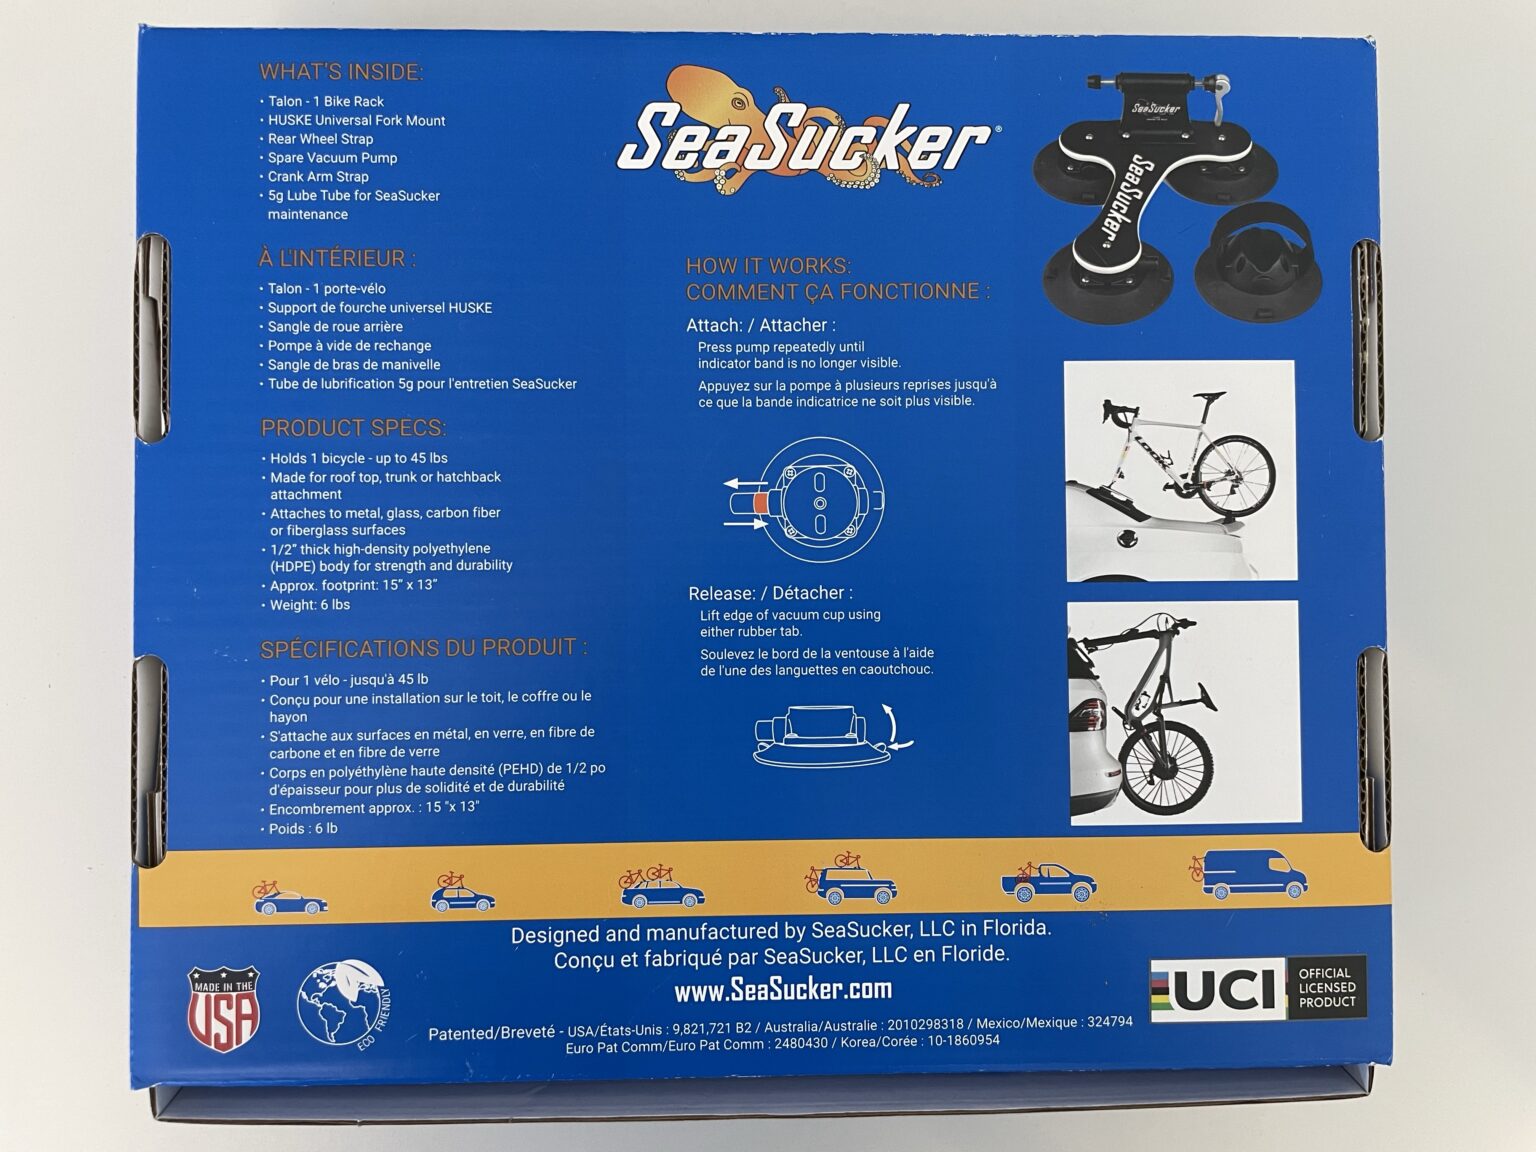 SeaSucker Unterdruck Fahrradträger für 1 Fahrrad (Talon Rack - 1 Bike) - Altenburg-Garage AG 2